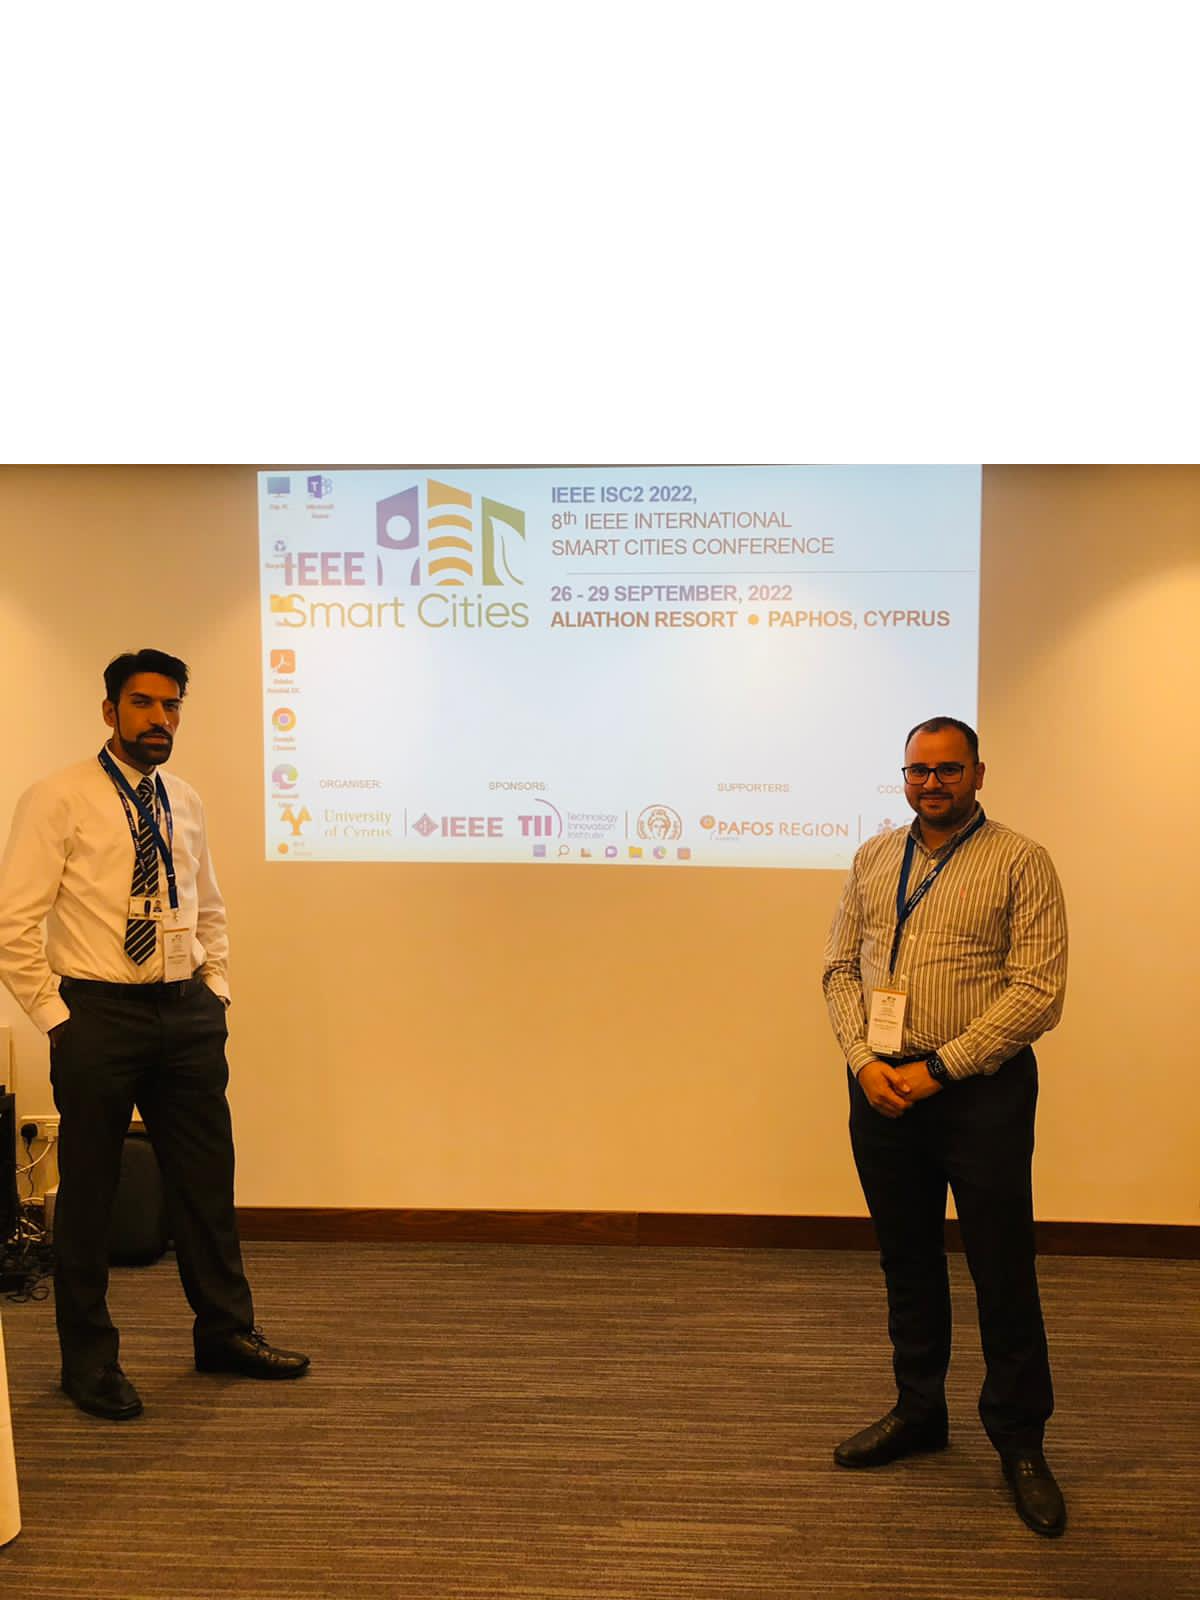 مشاركه بحث علمي في المؤتمر الدولي الثامن للمدن الذكية (The 8th IEEE Smart Cities ISC2022)